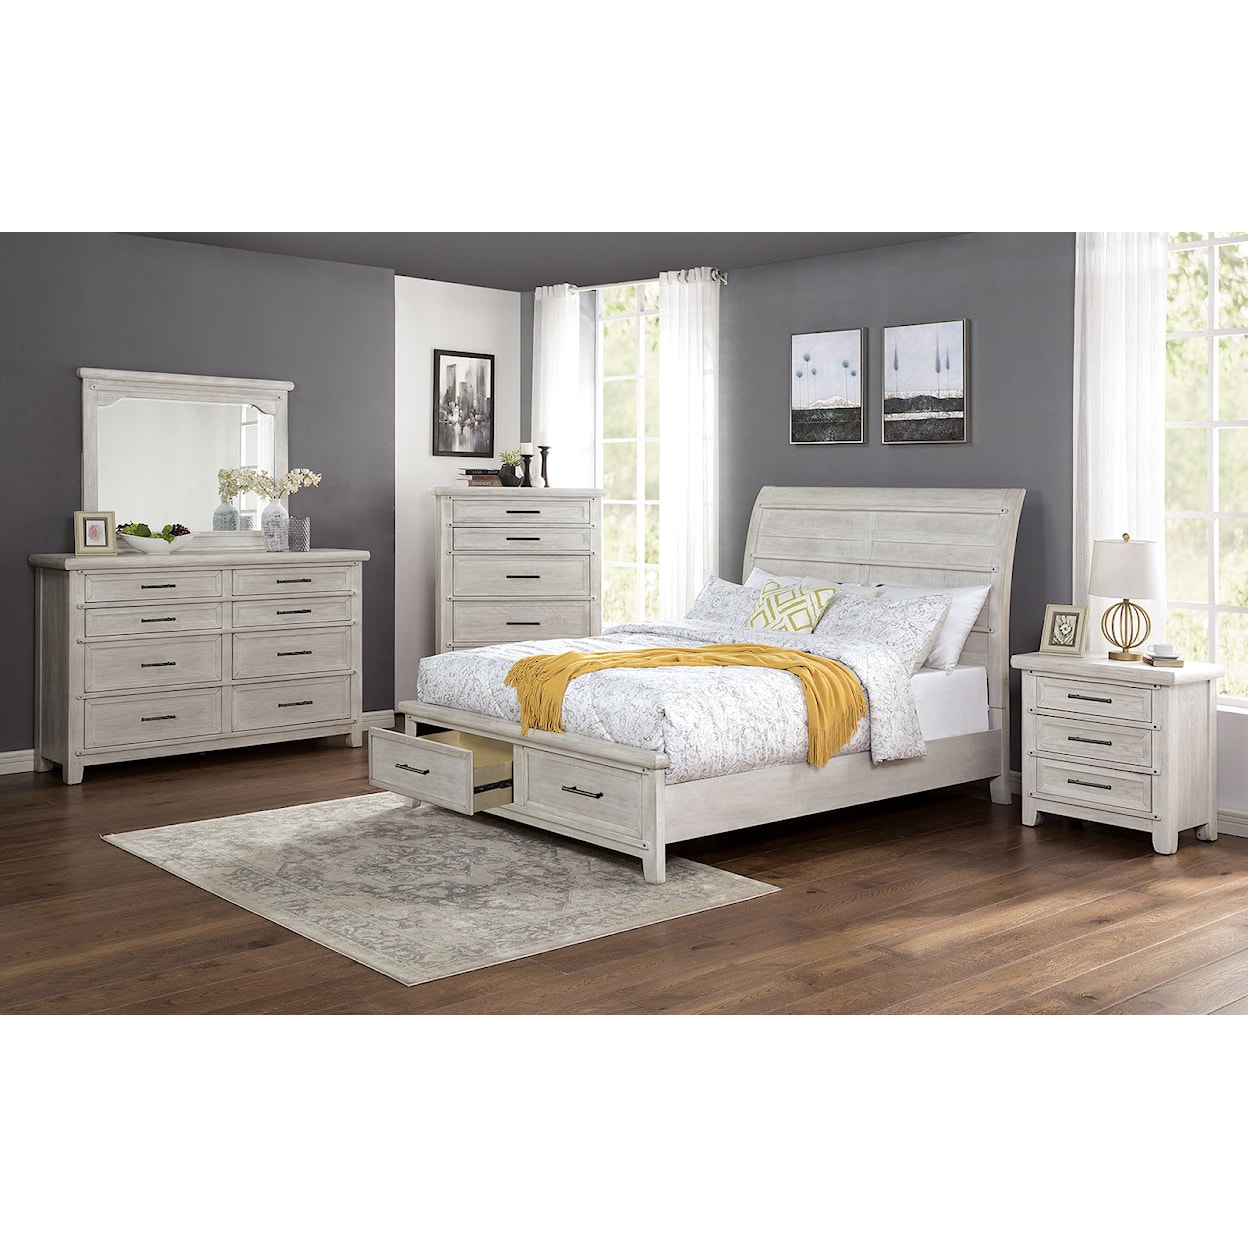 Furniture of America Shawnette 5-Piece Queen Bedroom Set